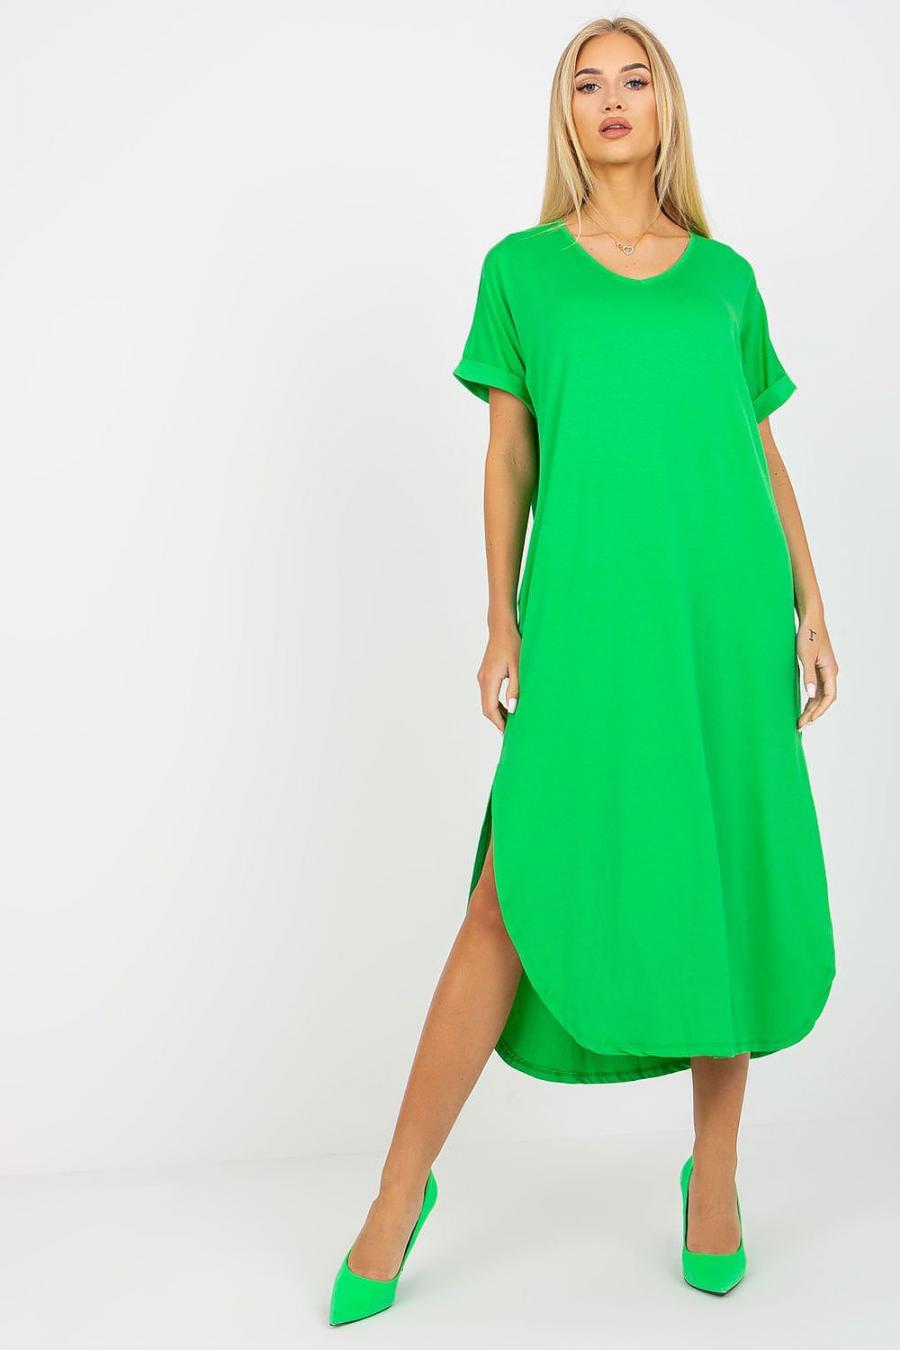 Ostatní značky šaty dámské 167099 - Zelená - velikost S